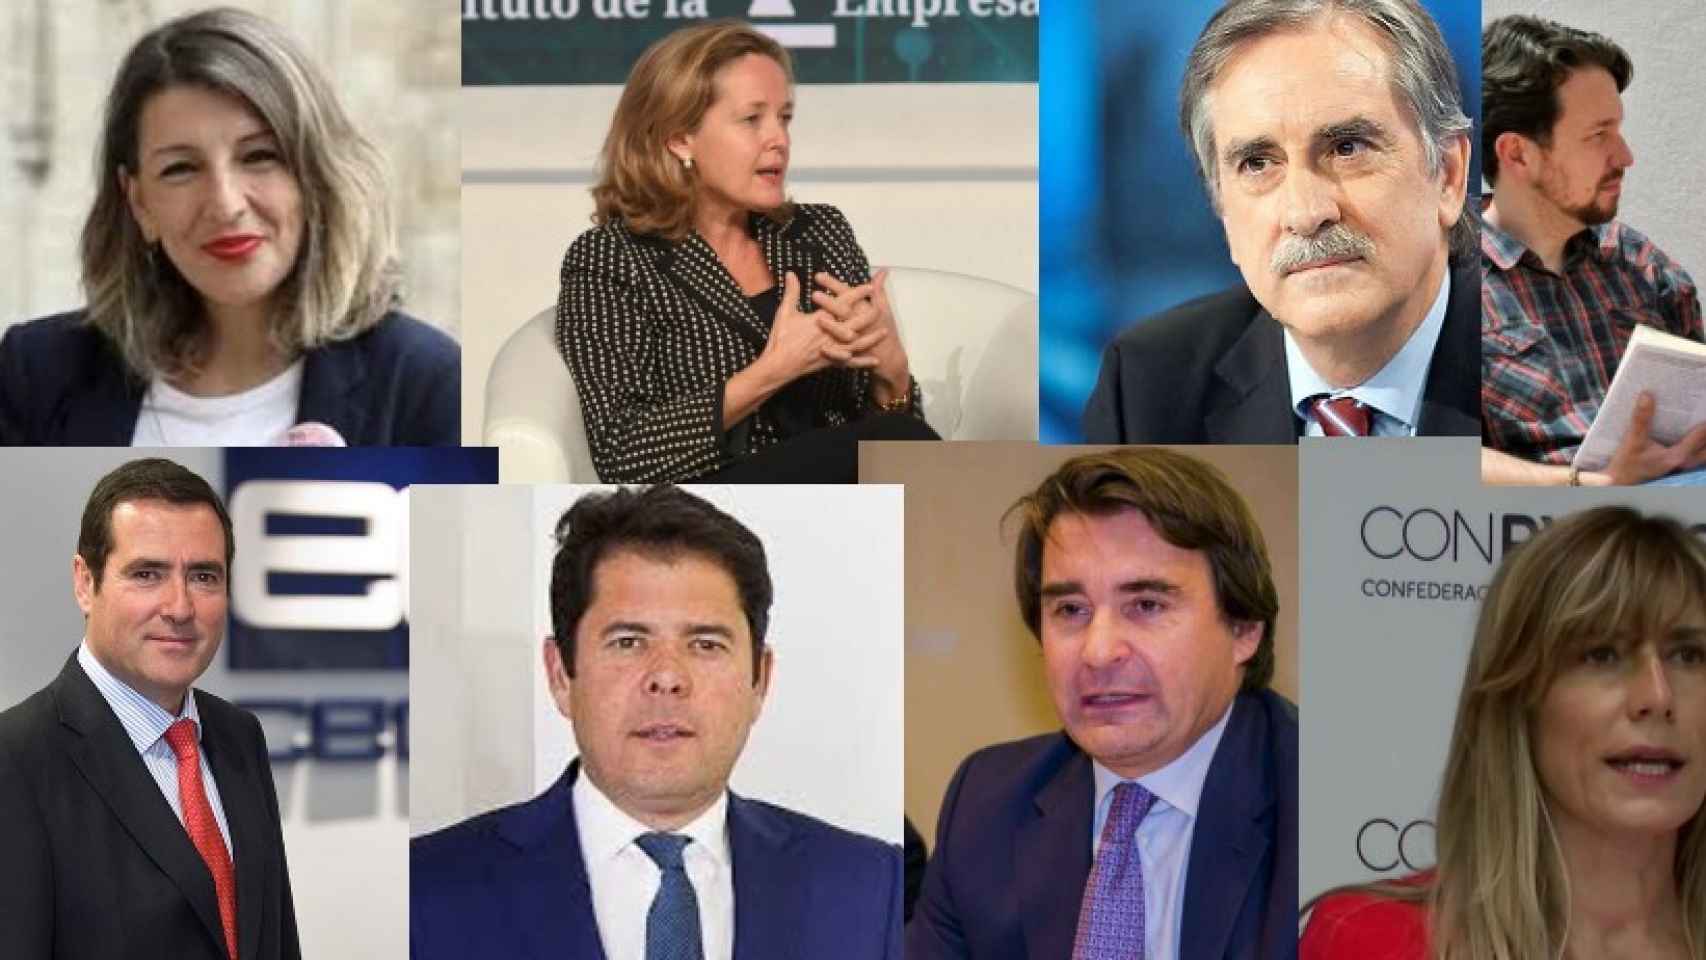 Yolanda Díaz, Nadia Calviño, Valeriano Gómez, Pablo Iglesias, Antonio Garamendi, Gerardo Cuerva, José Luis Roca y Begoña Gómez.